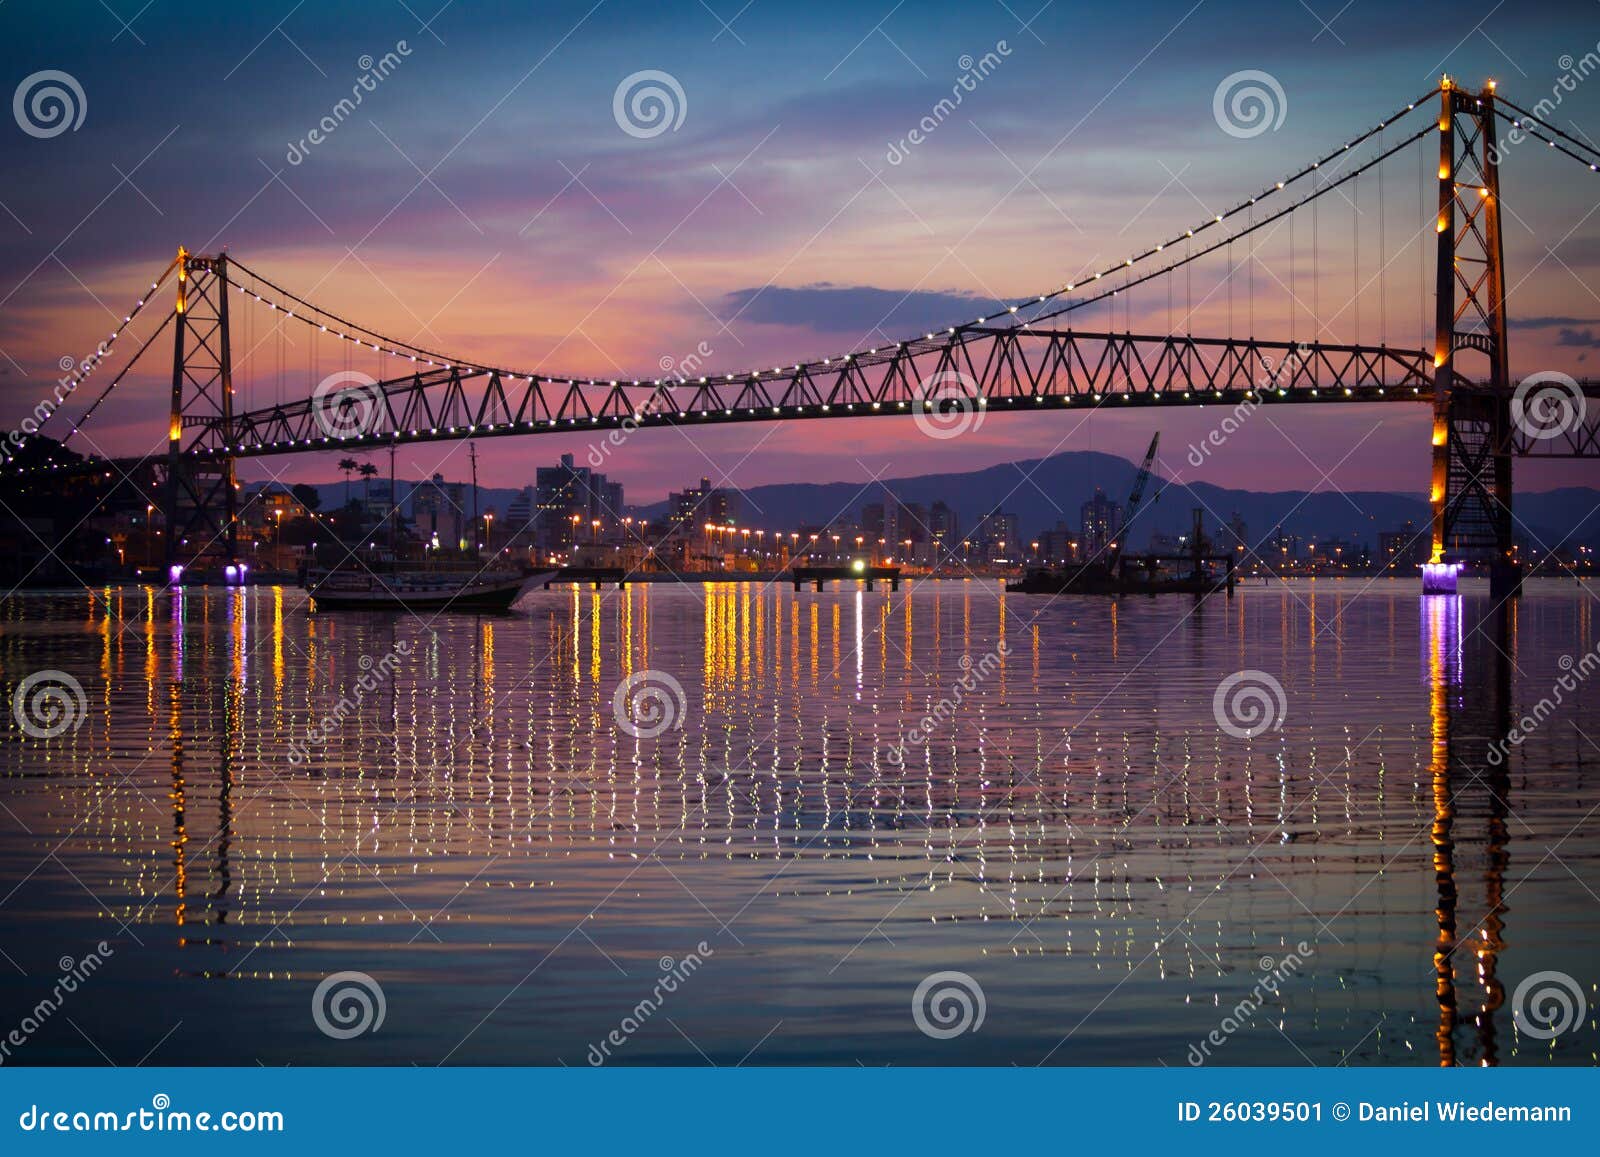 hercilio luz bridge at sunset